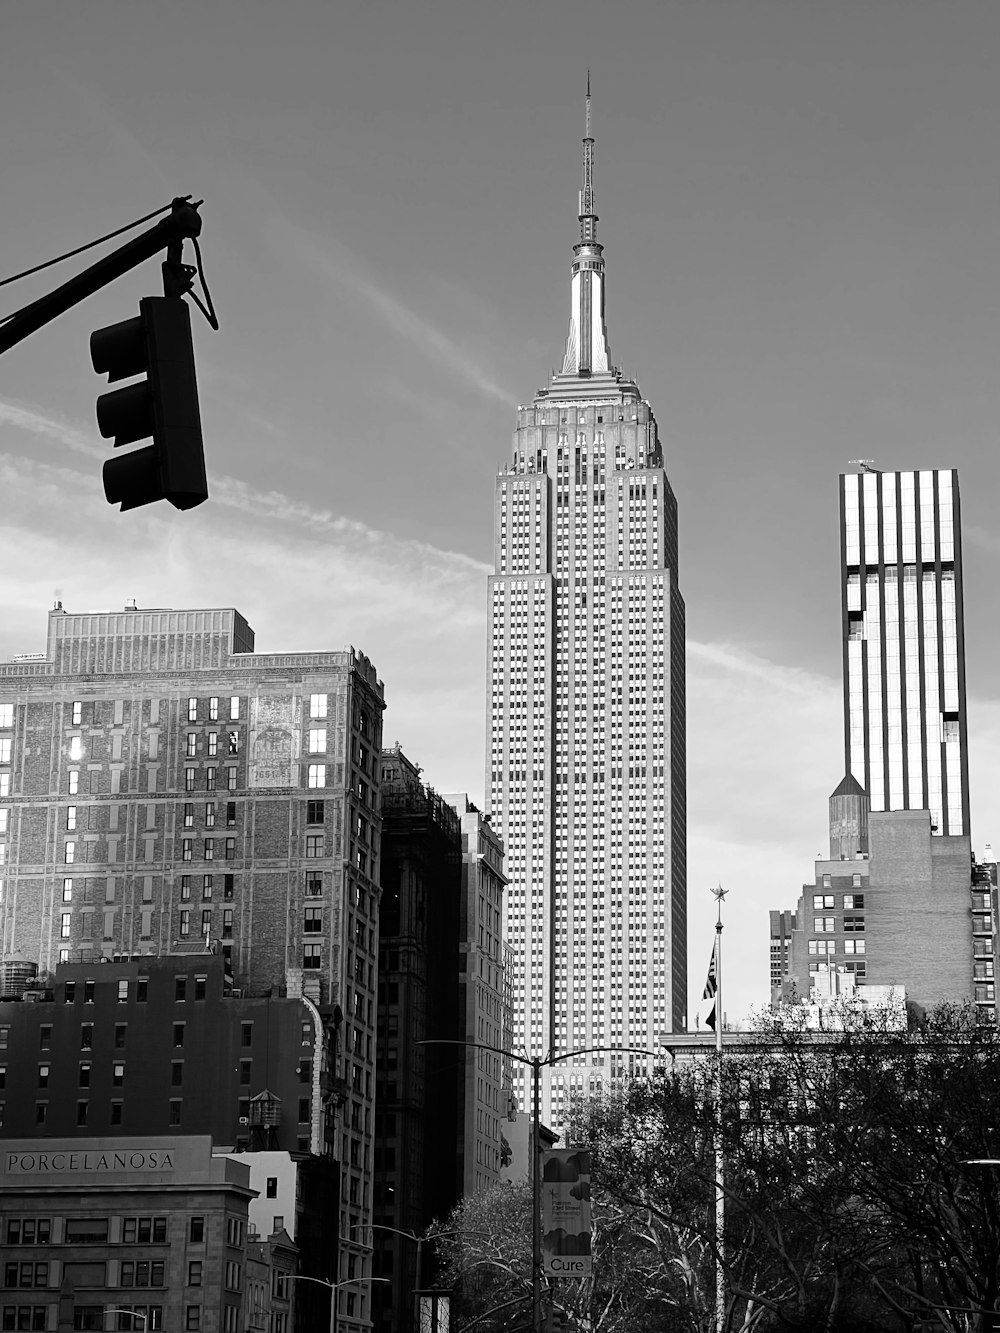 uma foto em preto e branco de uma cidade com edifícios altos